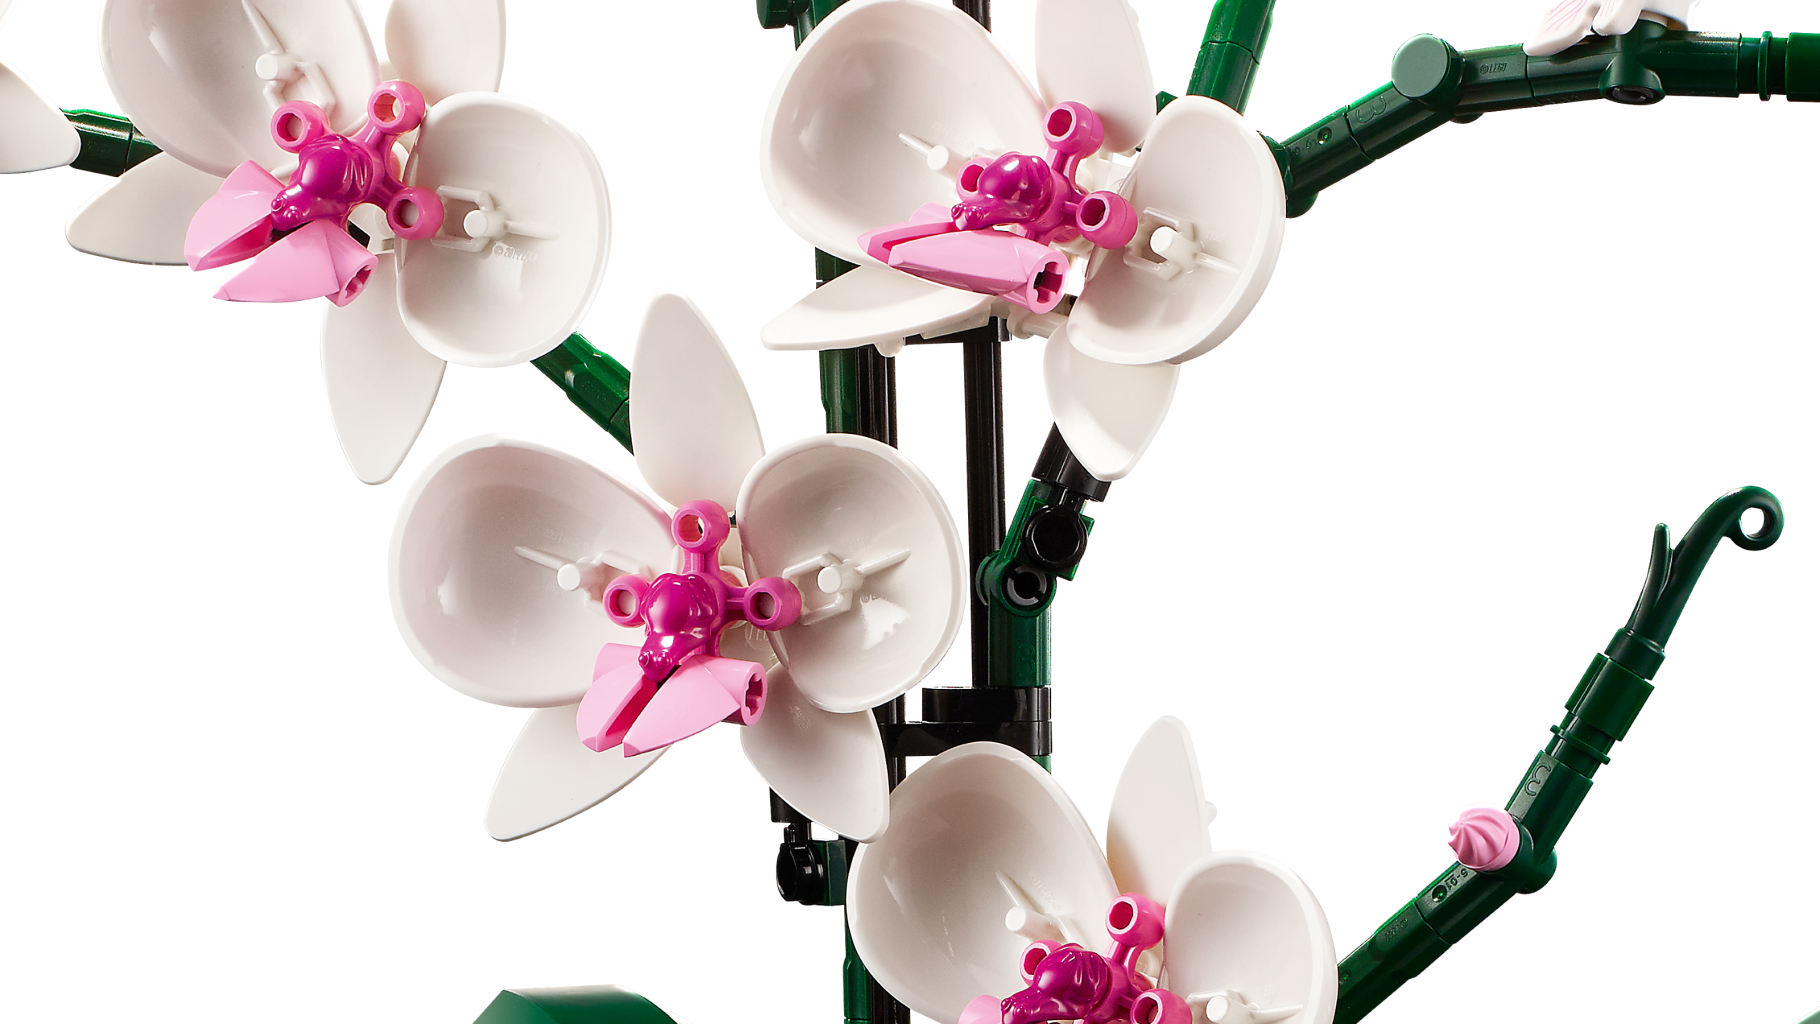 Lego - Orchidée - 10311 - Zoom sur les fleurs du modèle